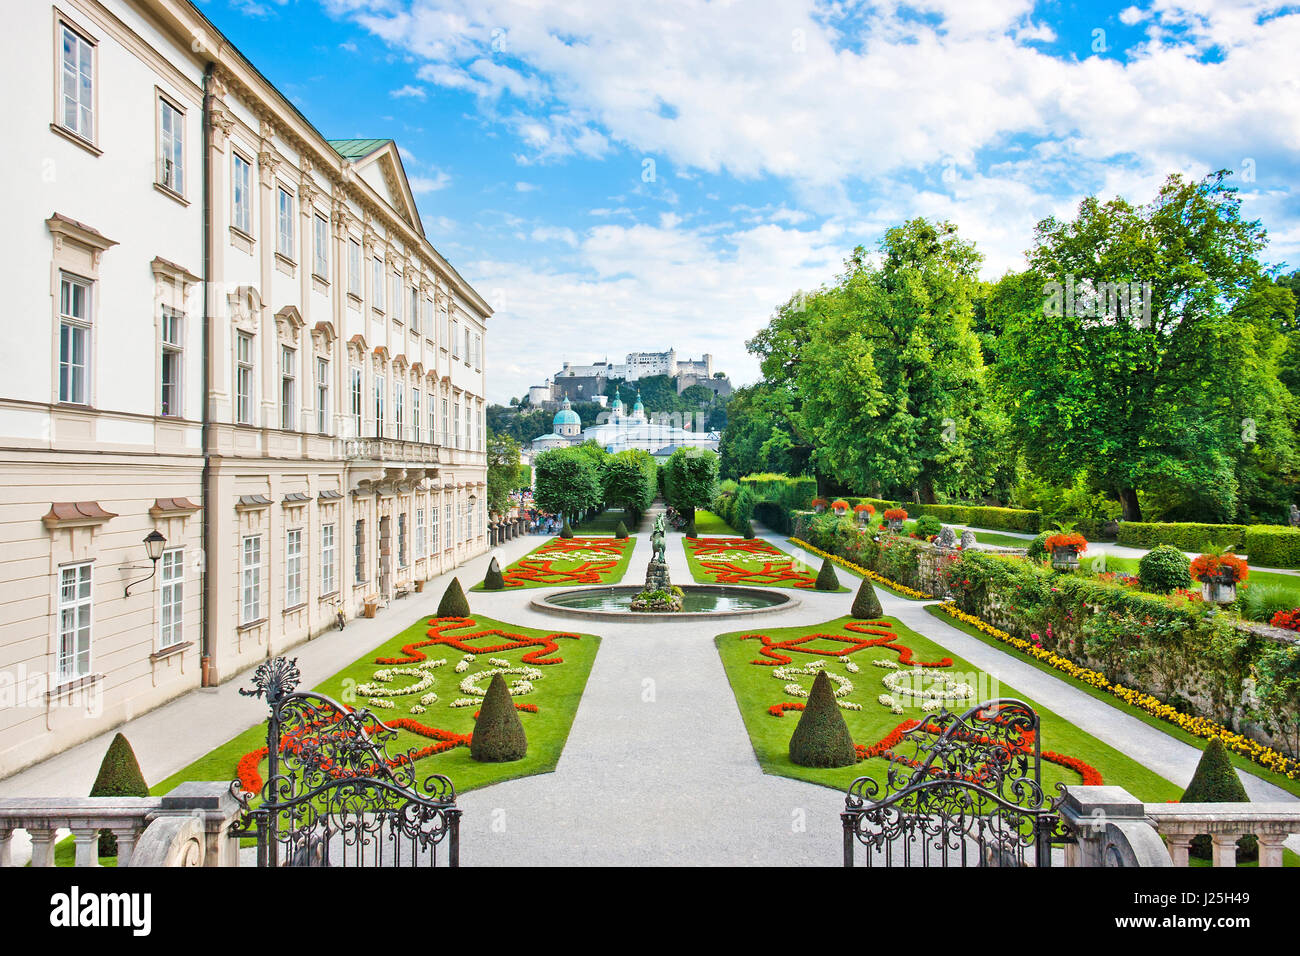 Bella vista dei famosi giardini Mirabell con il Palazzo Mirabell e la storica Vecchia Fortezza Hohensalzburg in background in Salzburg, Austria Foto Stock